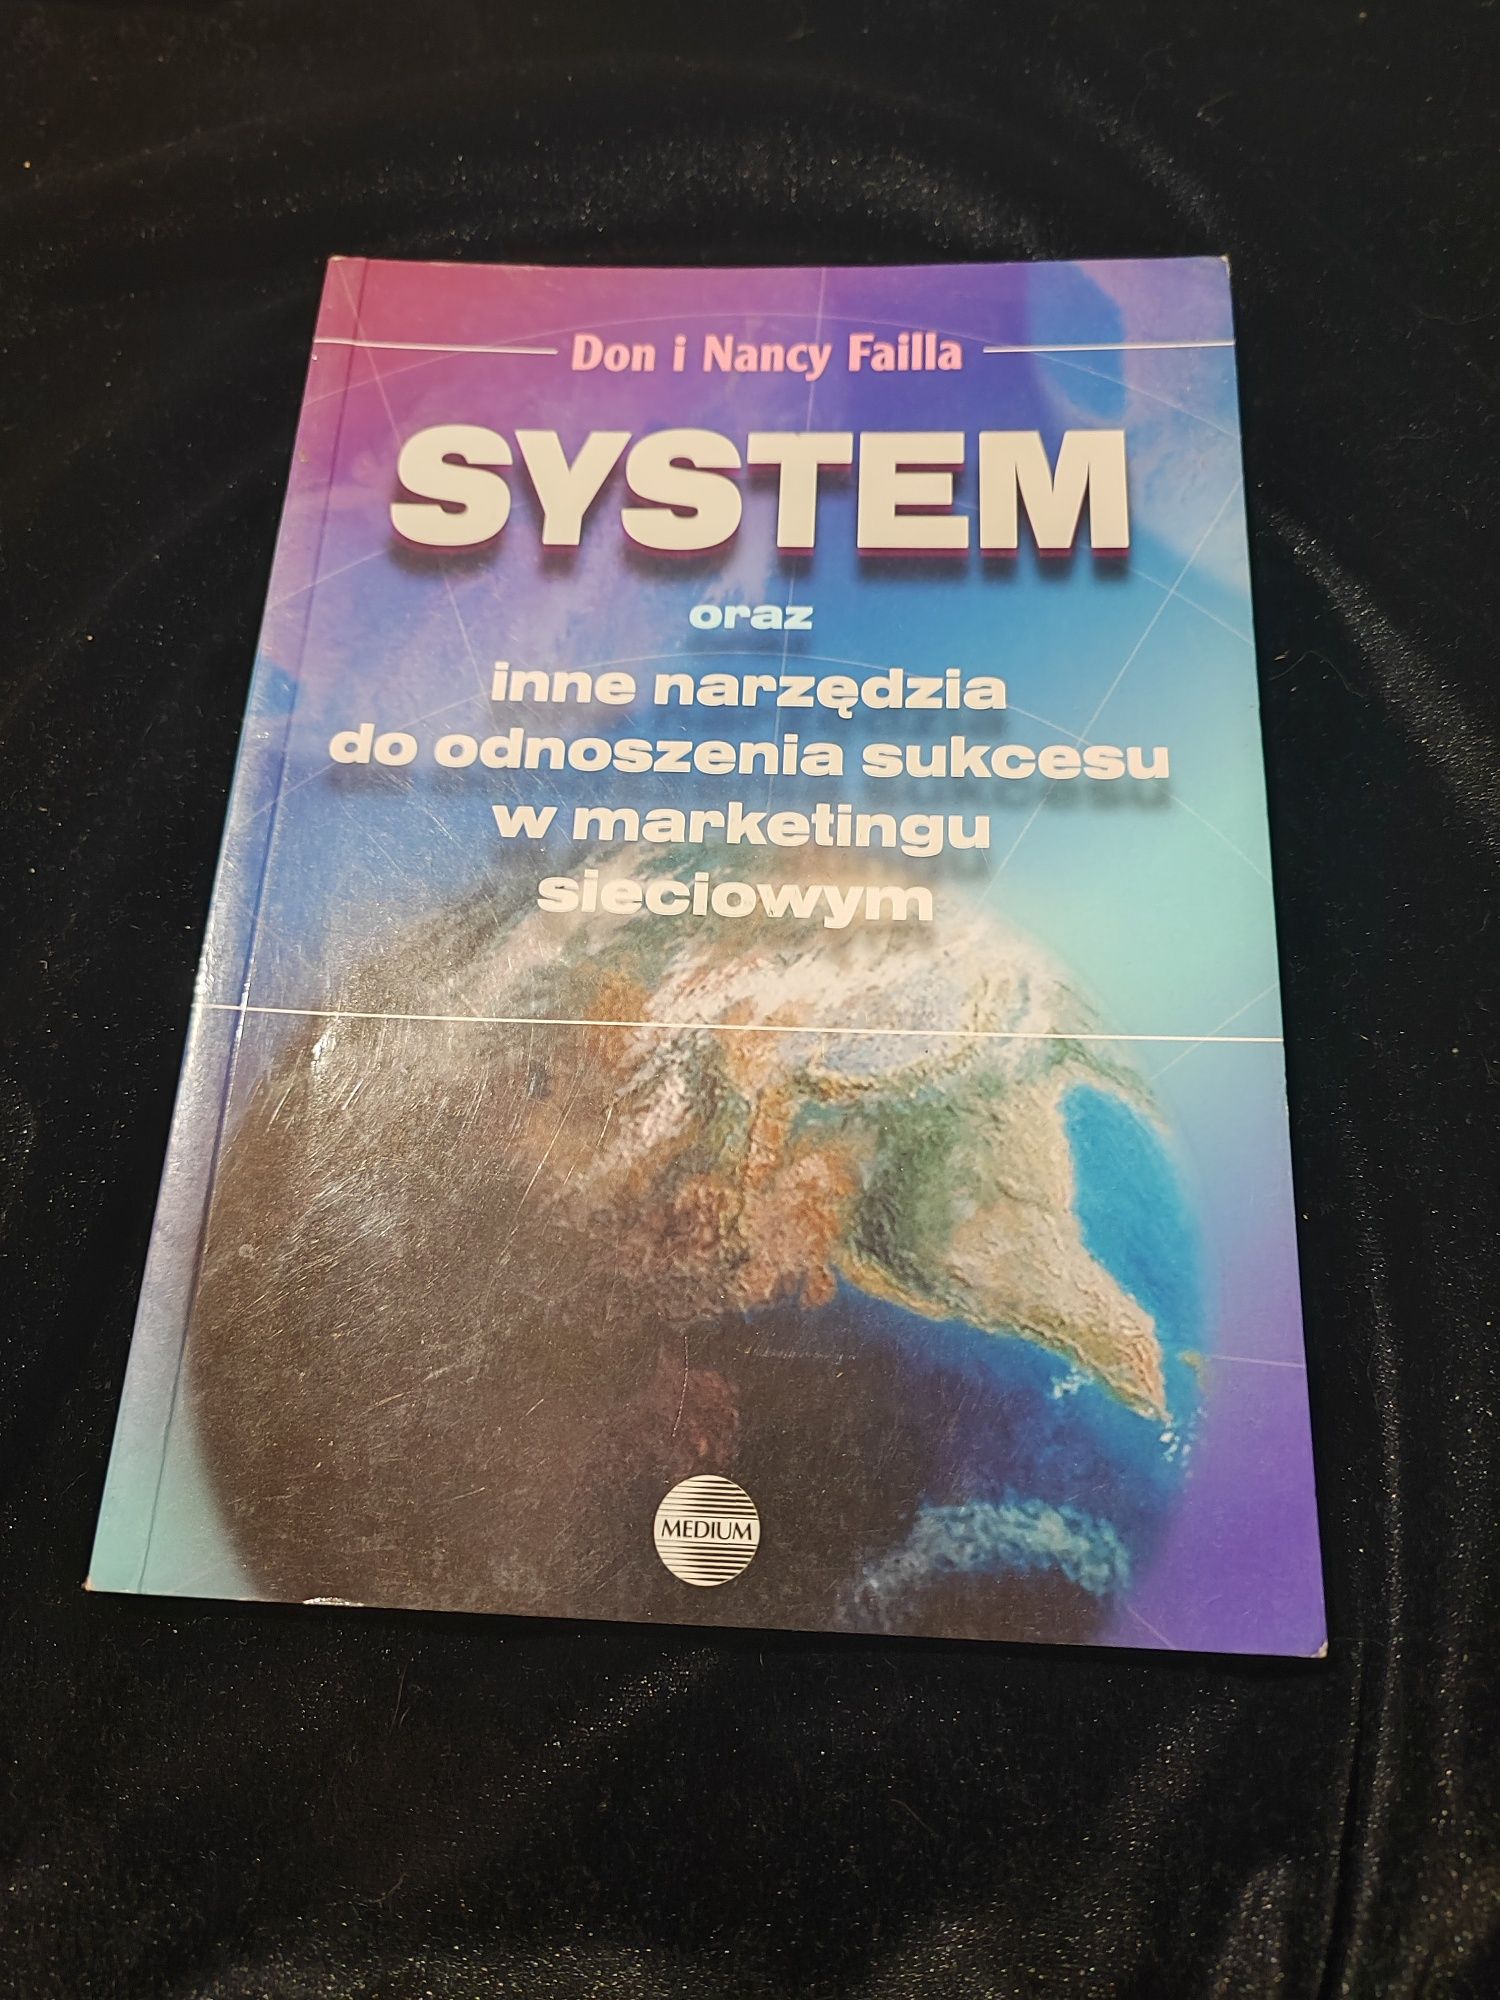 Książka System oraz inne narzędzia do odnoszenia sukcesu